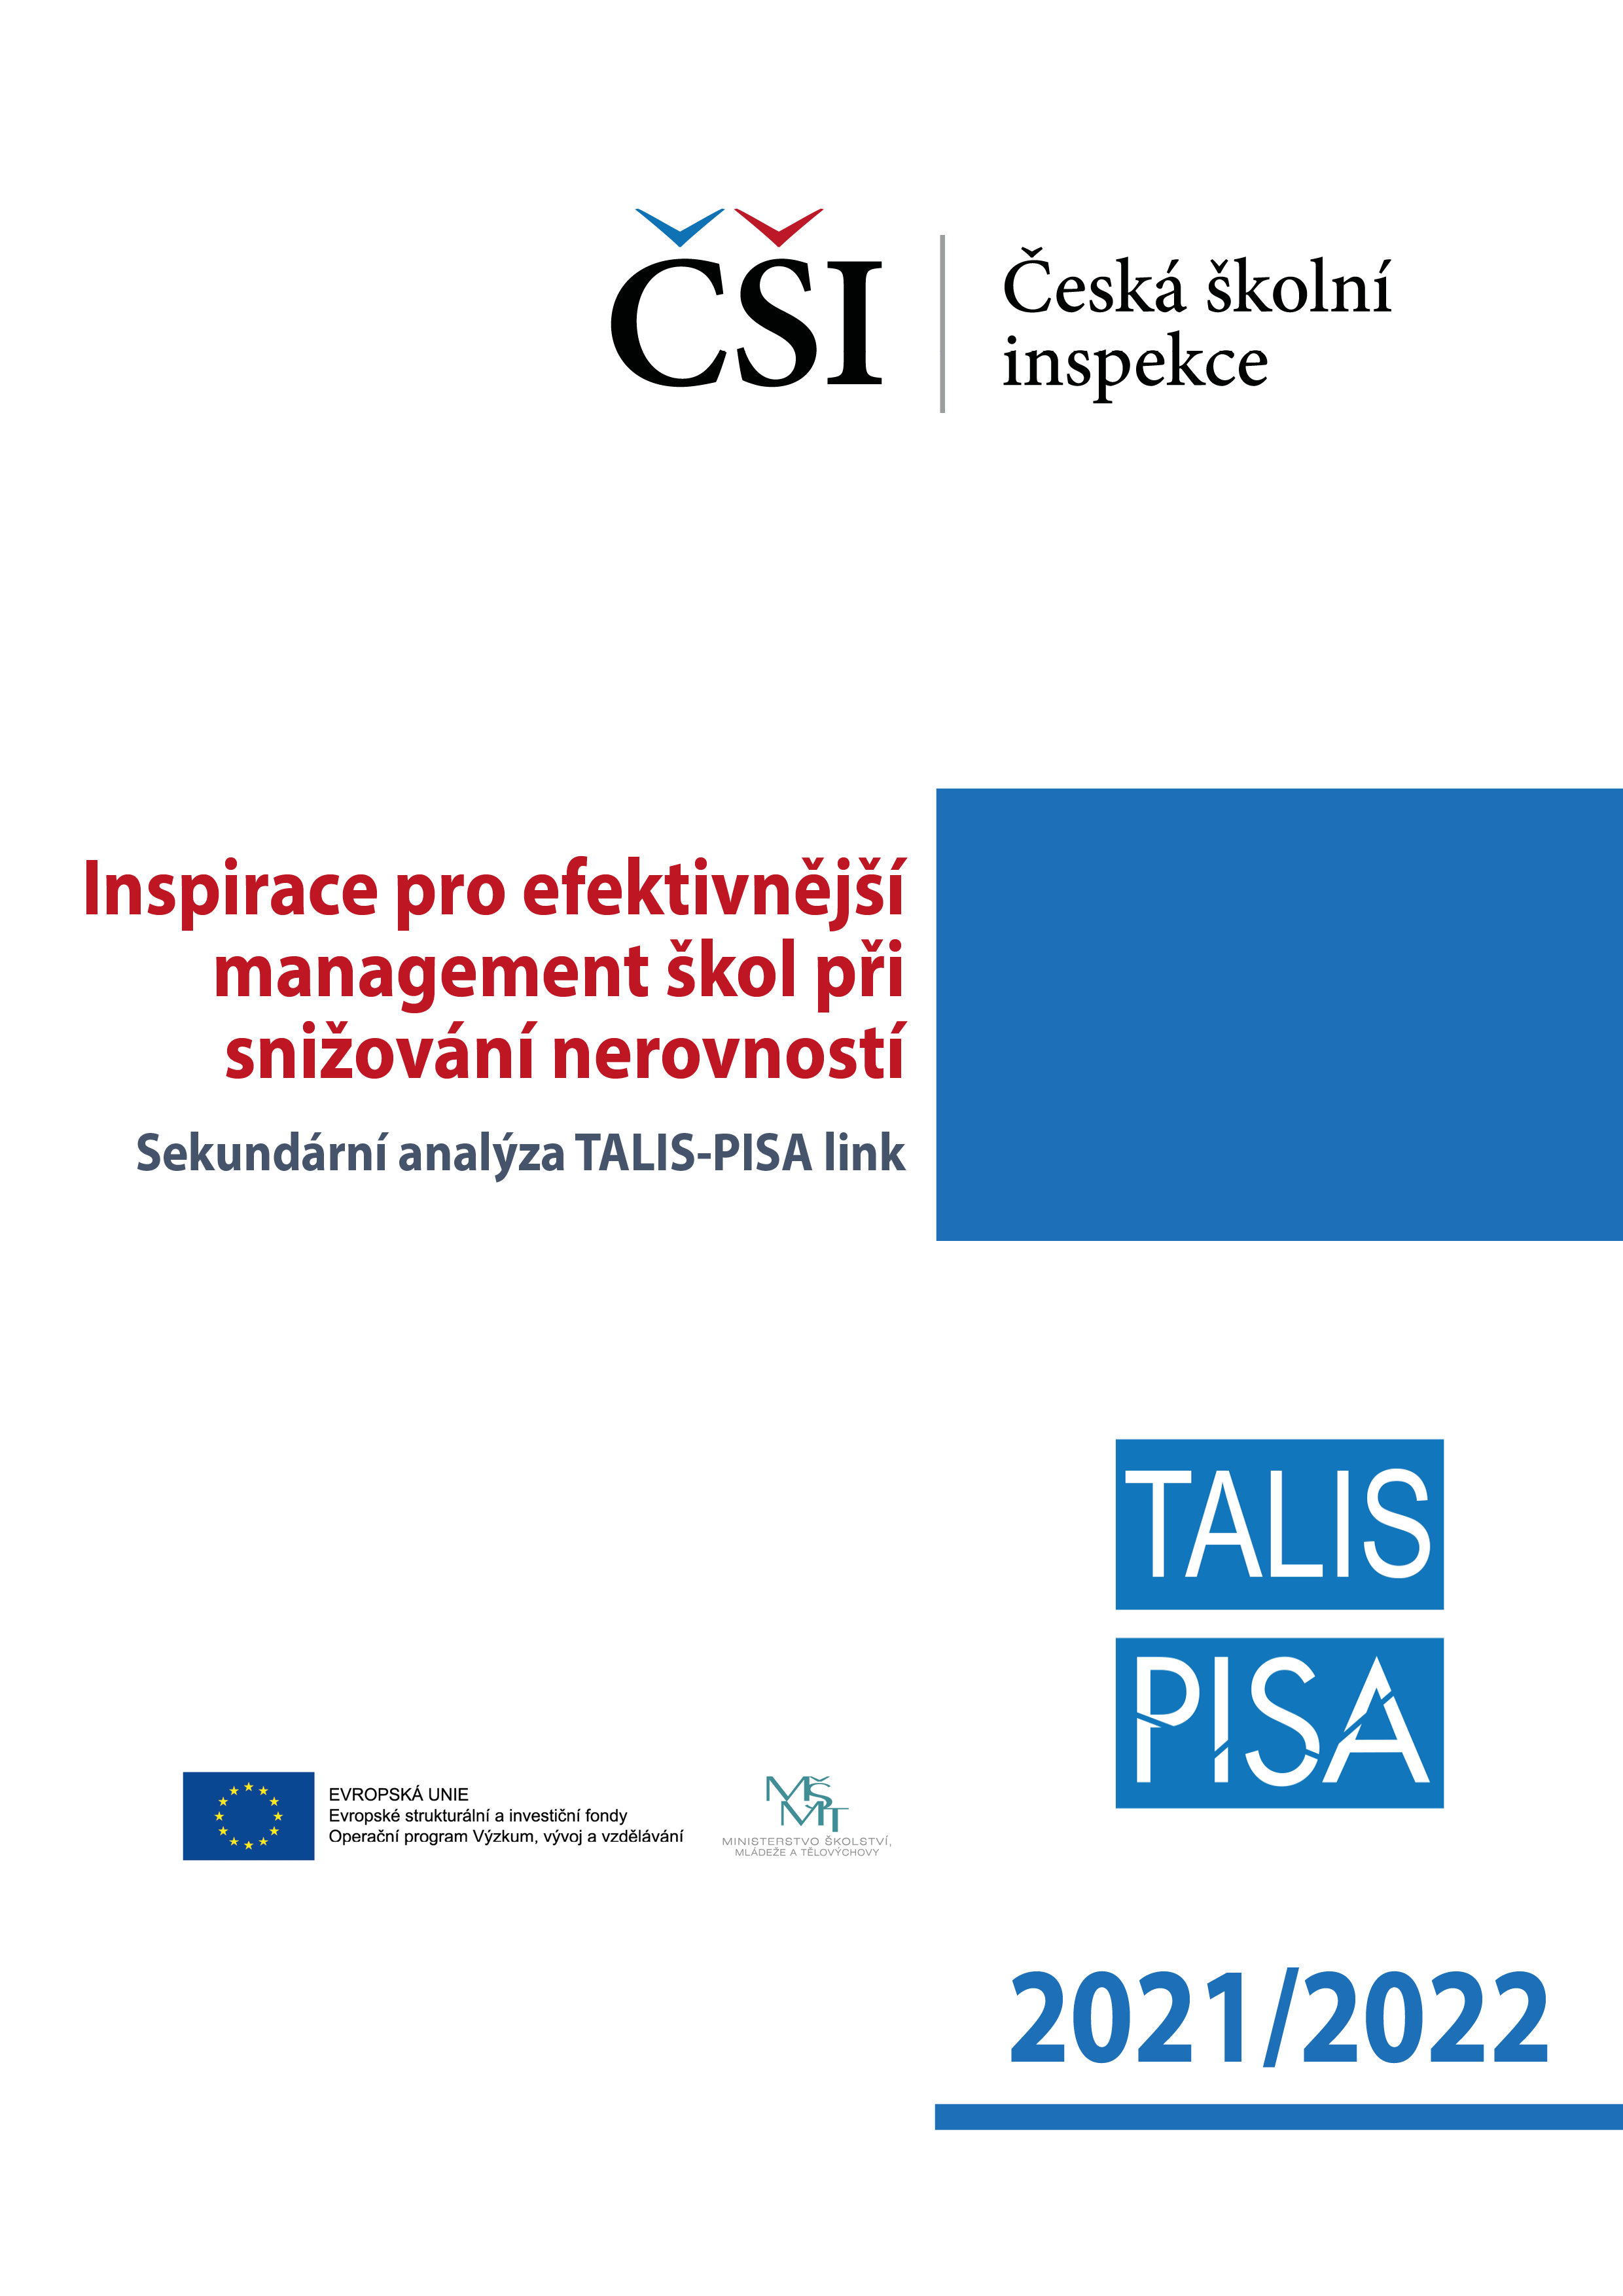 Sekundární analýza TALIS-PISA: Inspirace pro efektivnější management škol při snižování nerovností